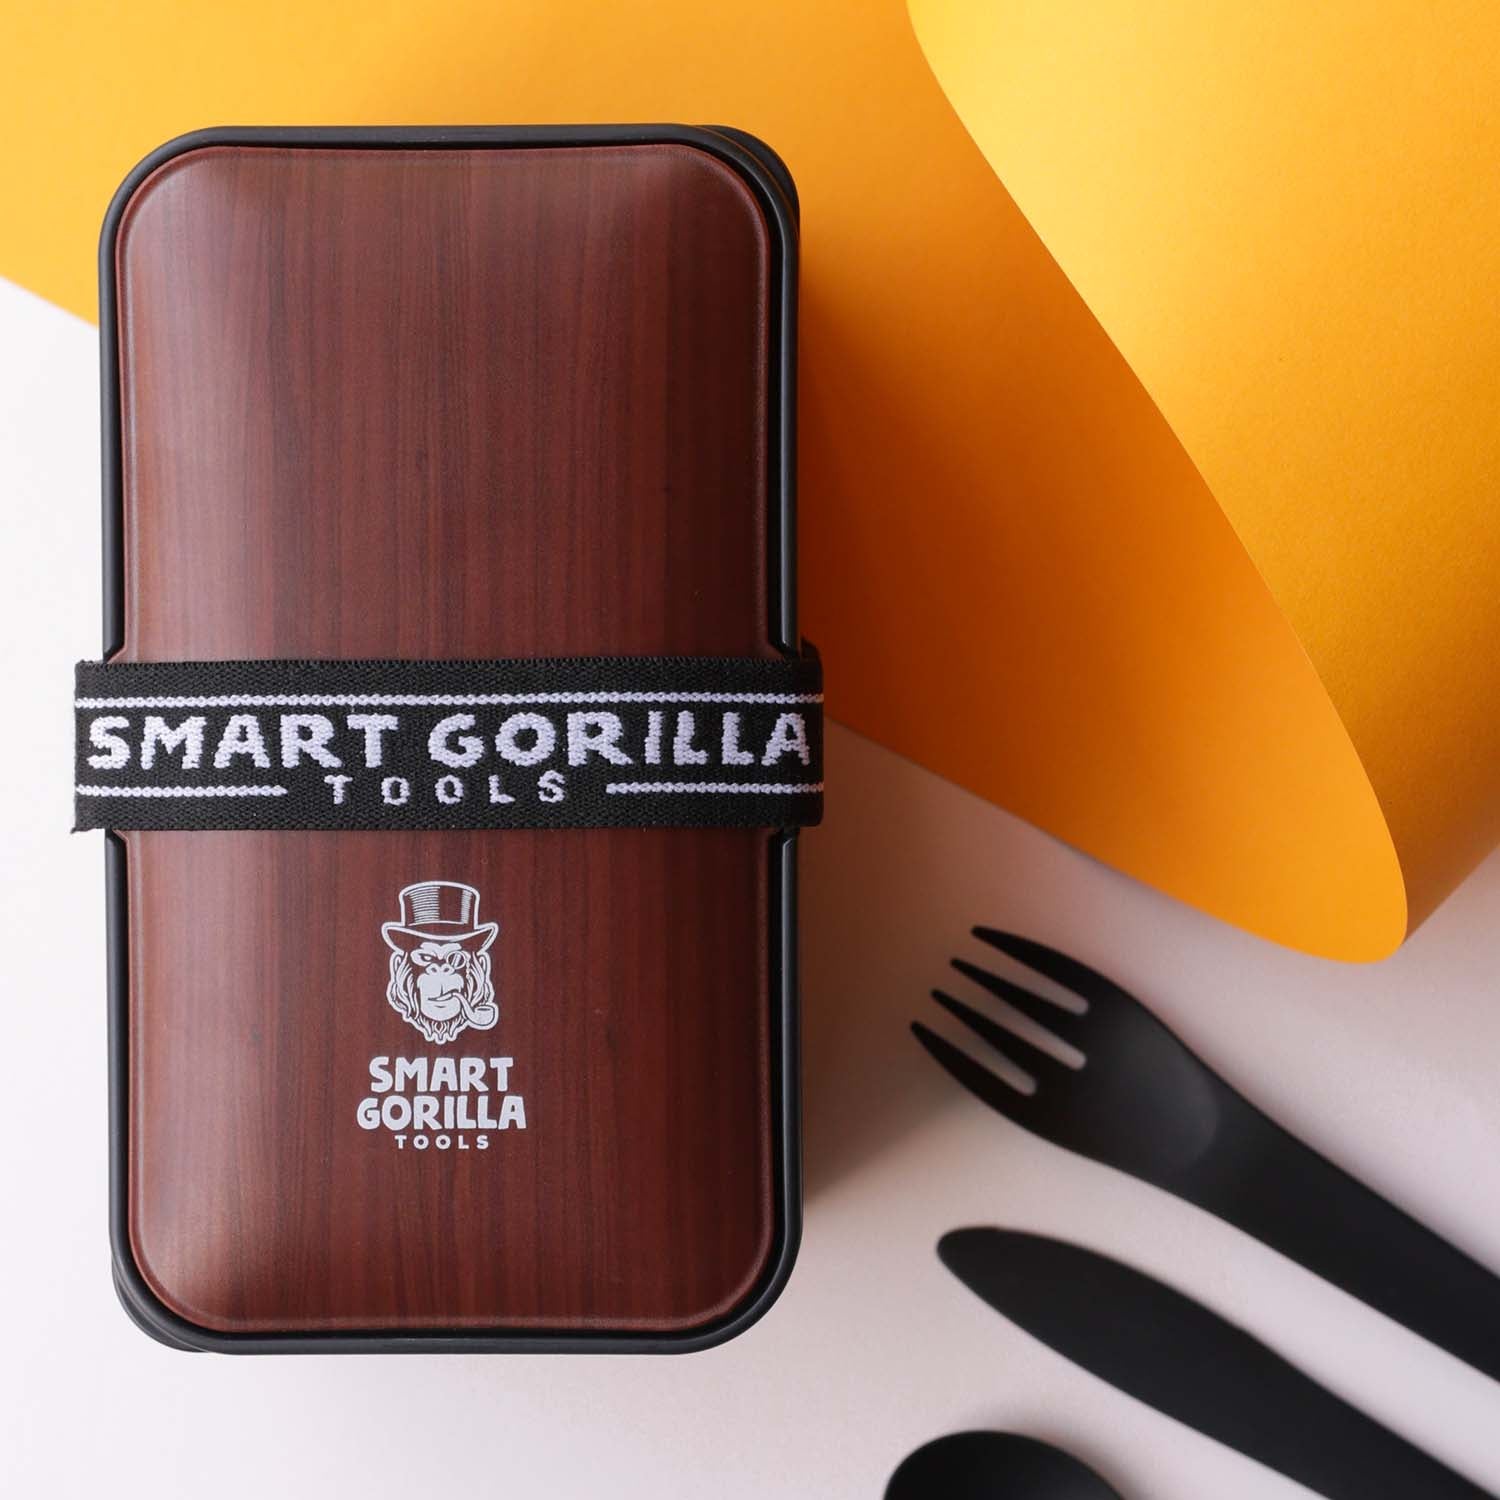 Bento Box "Walnussbaum" kaufen - bei Smart Gorilla Tools